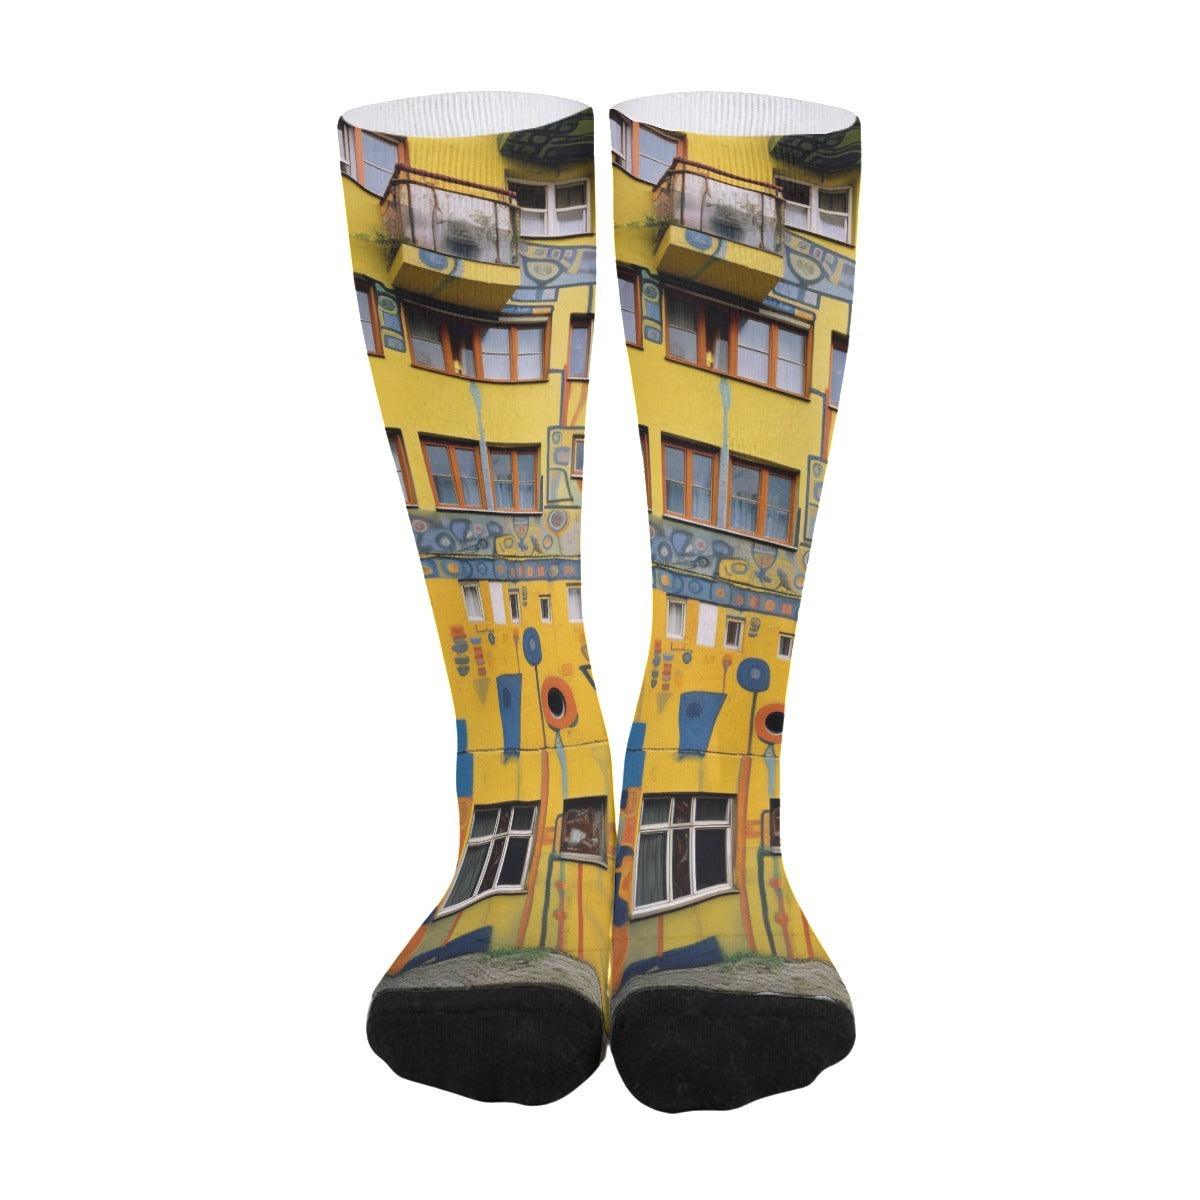 Elementologie® Unisex Long Socks! - Premium  from Elementologie - Just $11.99! Shop now at Elementologie